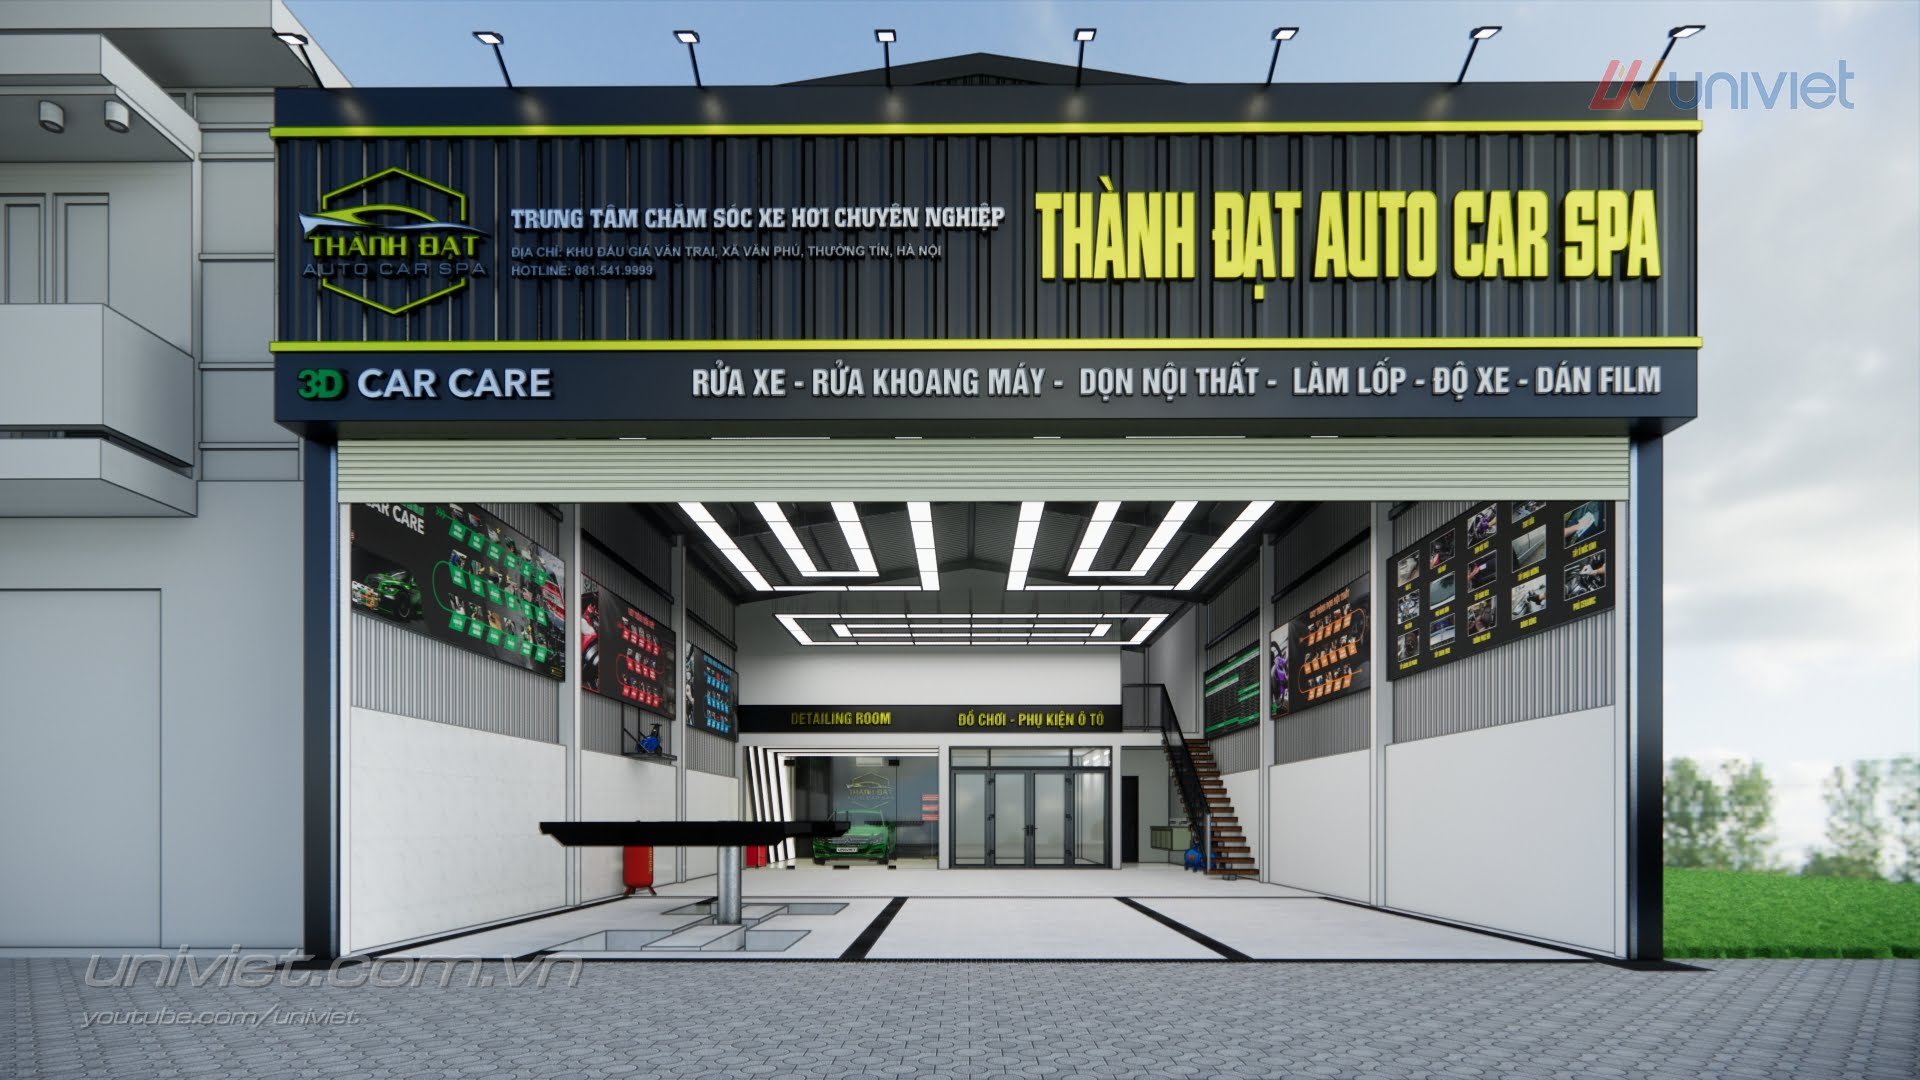 Mô hình 3D Trung tâm chăm sóc xe hơi chuyên nghiệp tại Hà Nội